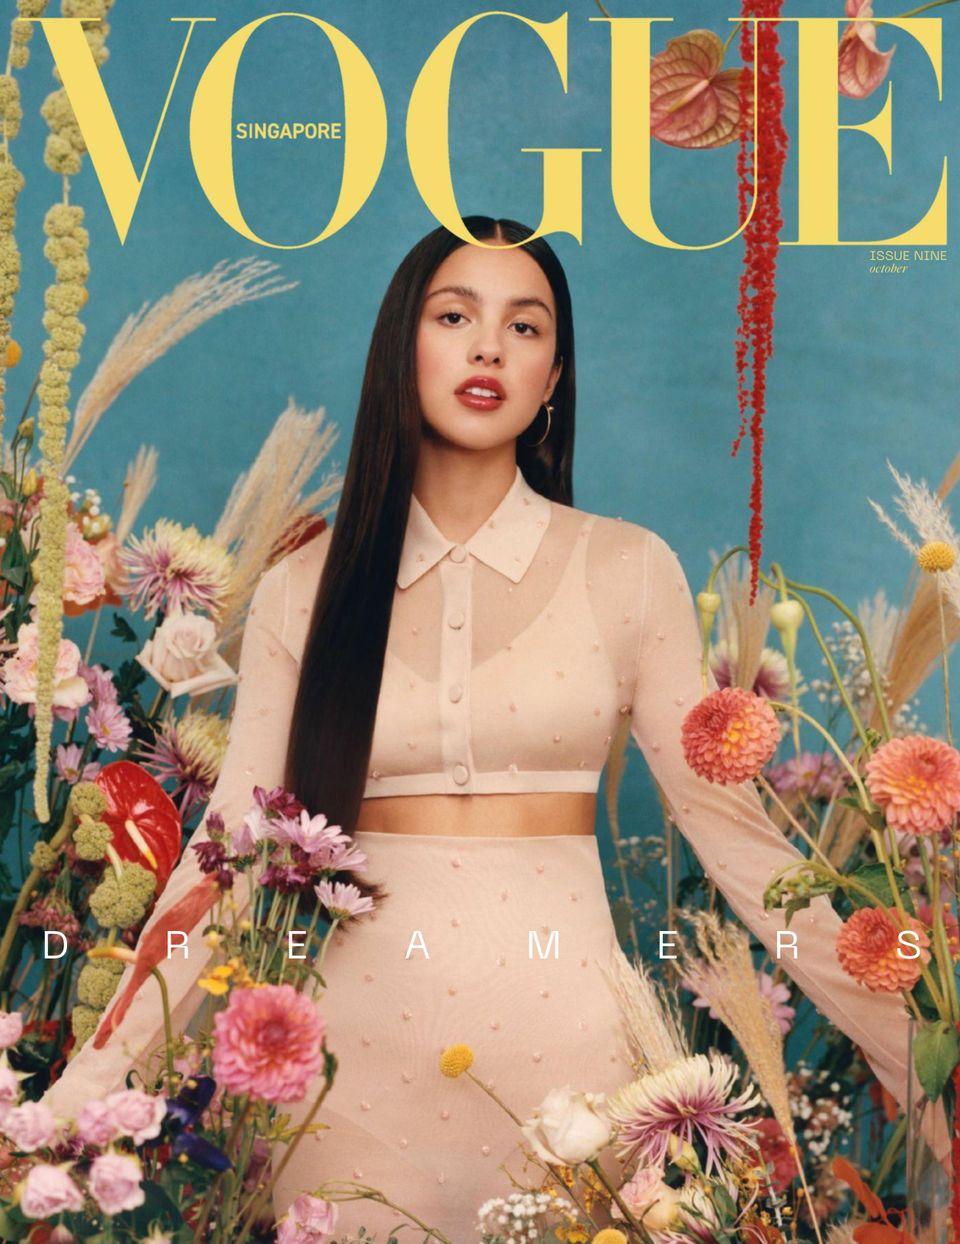 Vogue Singapore October 2021 (Digital) - DiscountMags.com